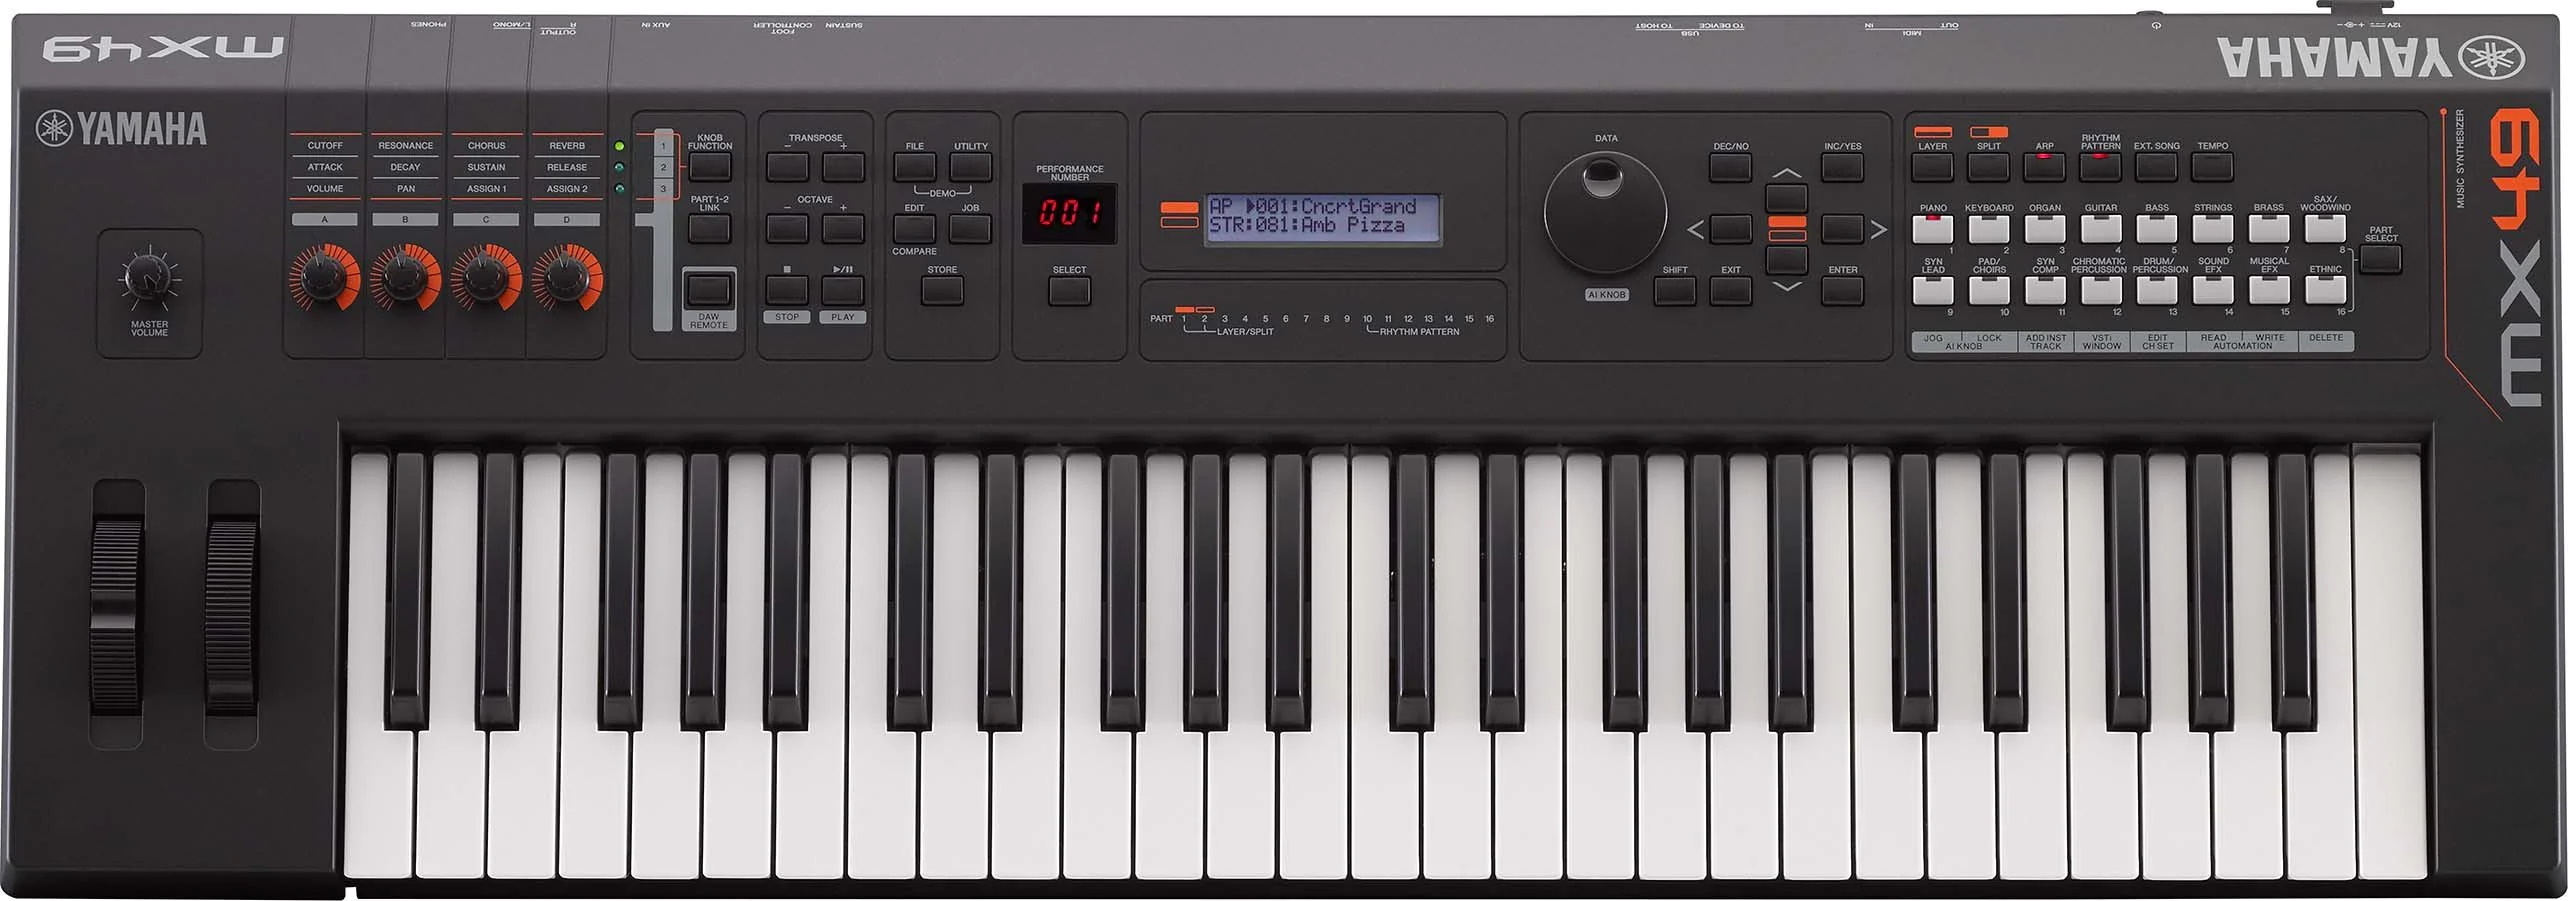 雅马哈MX49 V2音乐合成器MIDI控制器键盘